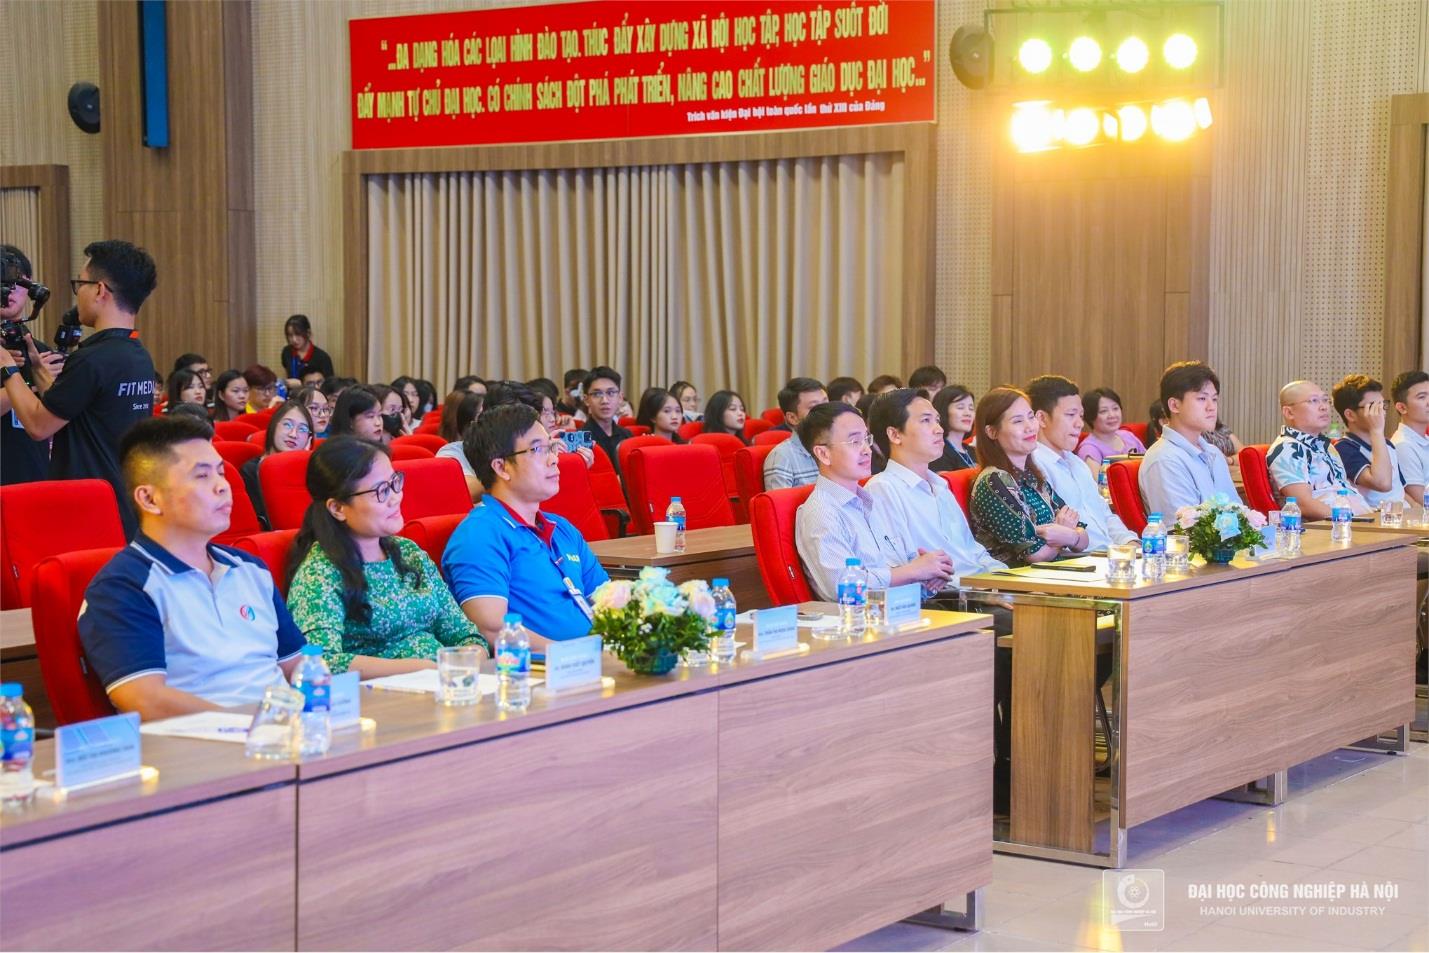 [doanhnghieptiepthi] Đại học Công nghiệp Hà Nội: Tổ chức thành công đêm chung kết Marketing Journey 2024